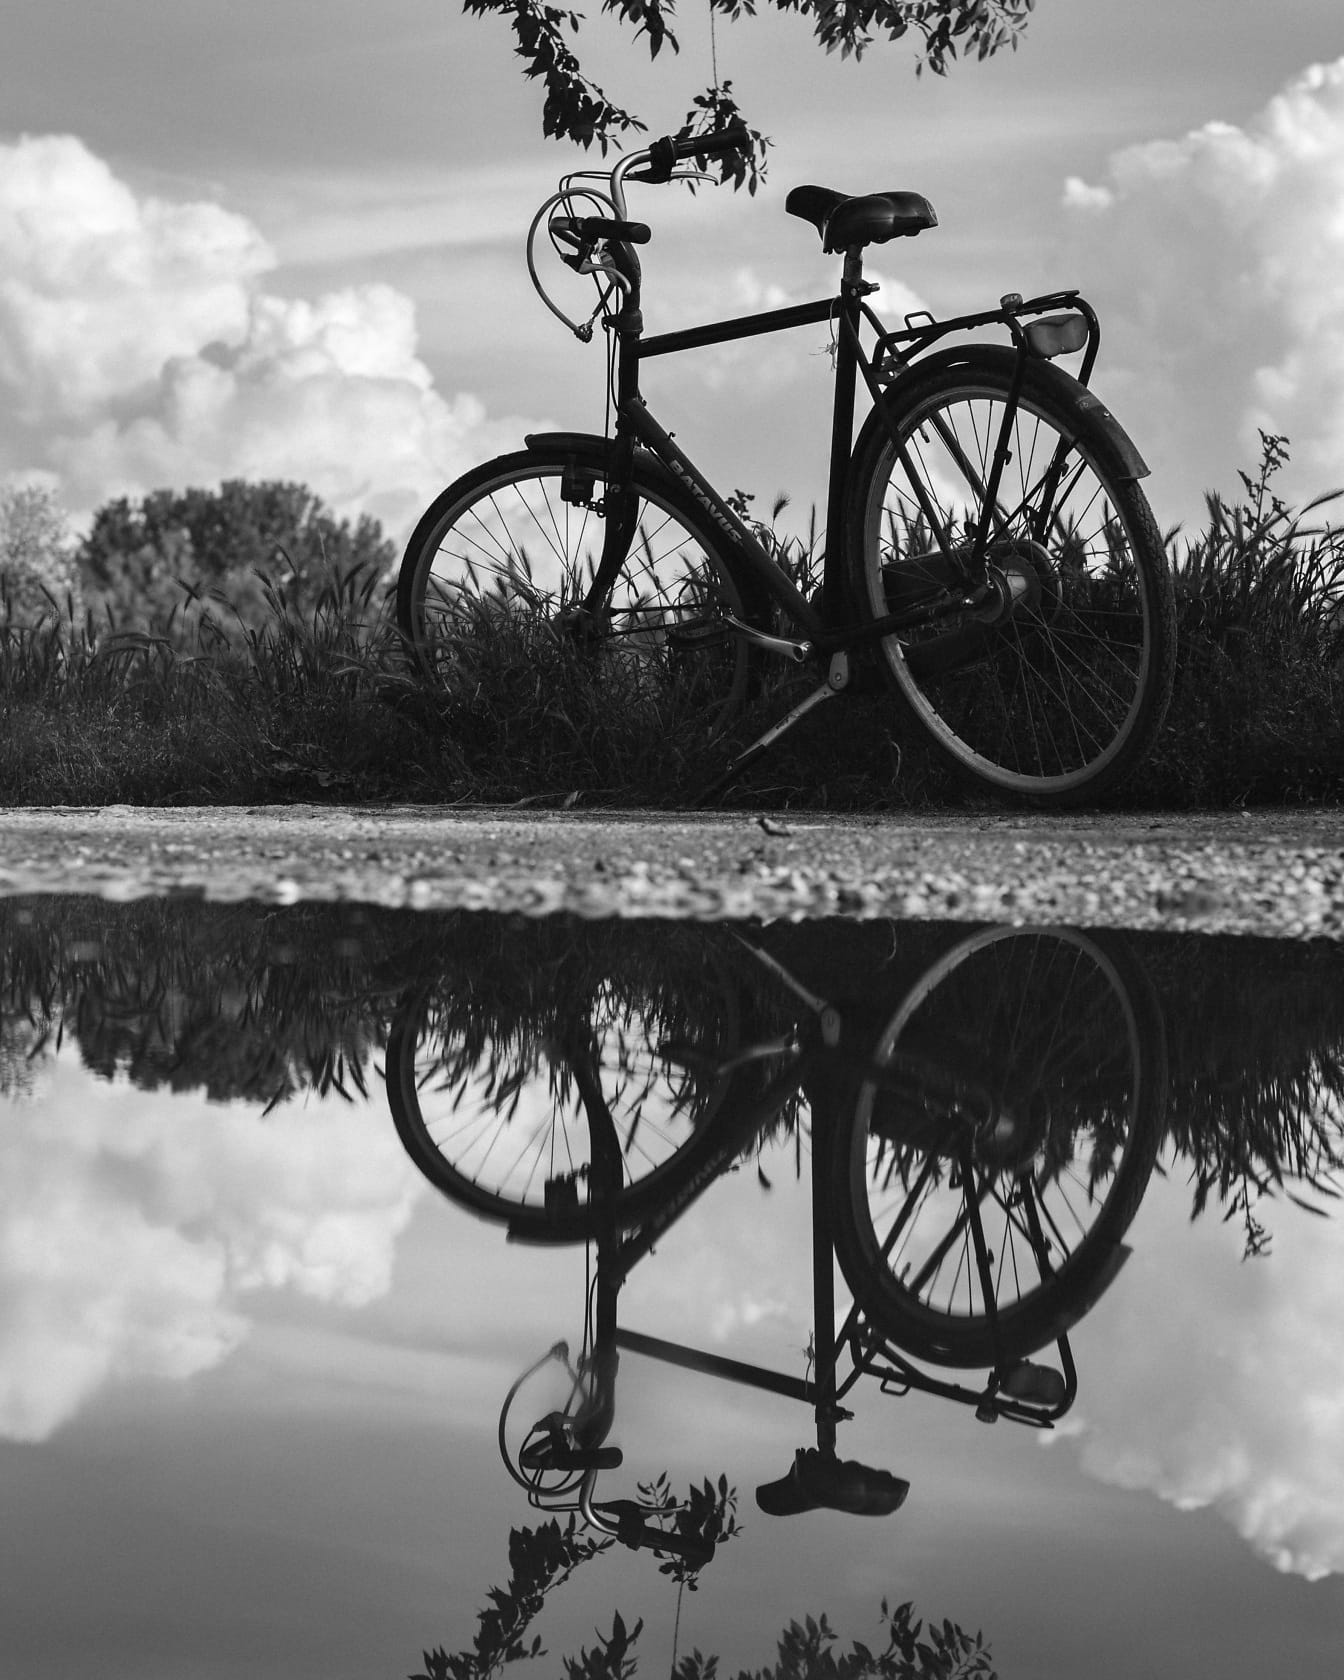 Ảnh đơn sắc của xe đạp trên đường nông thôn với sự phản chiếu trên mặt nước